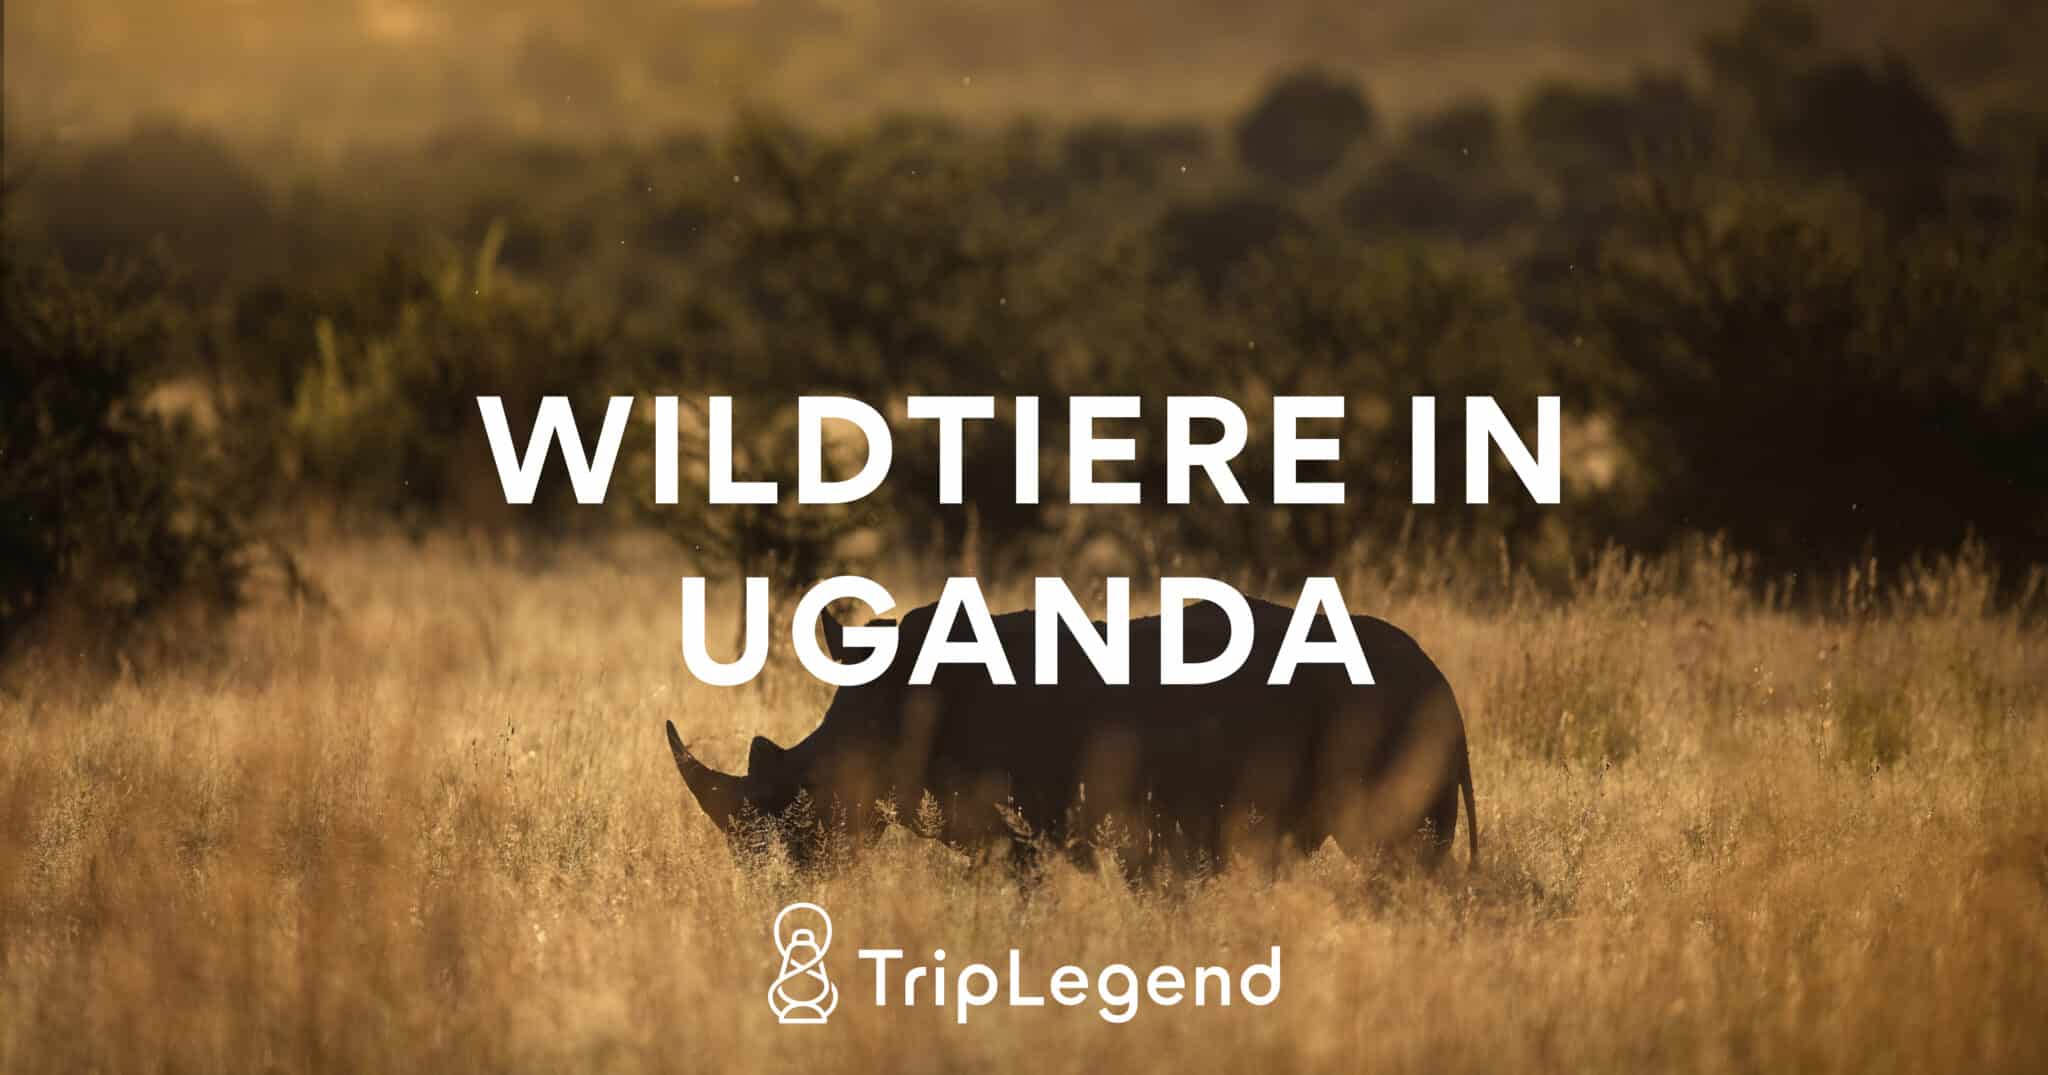 Immagine di contributo per l'articolo sulla fauna selvatica in Uganda